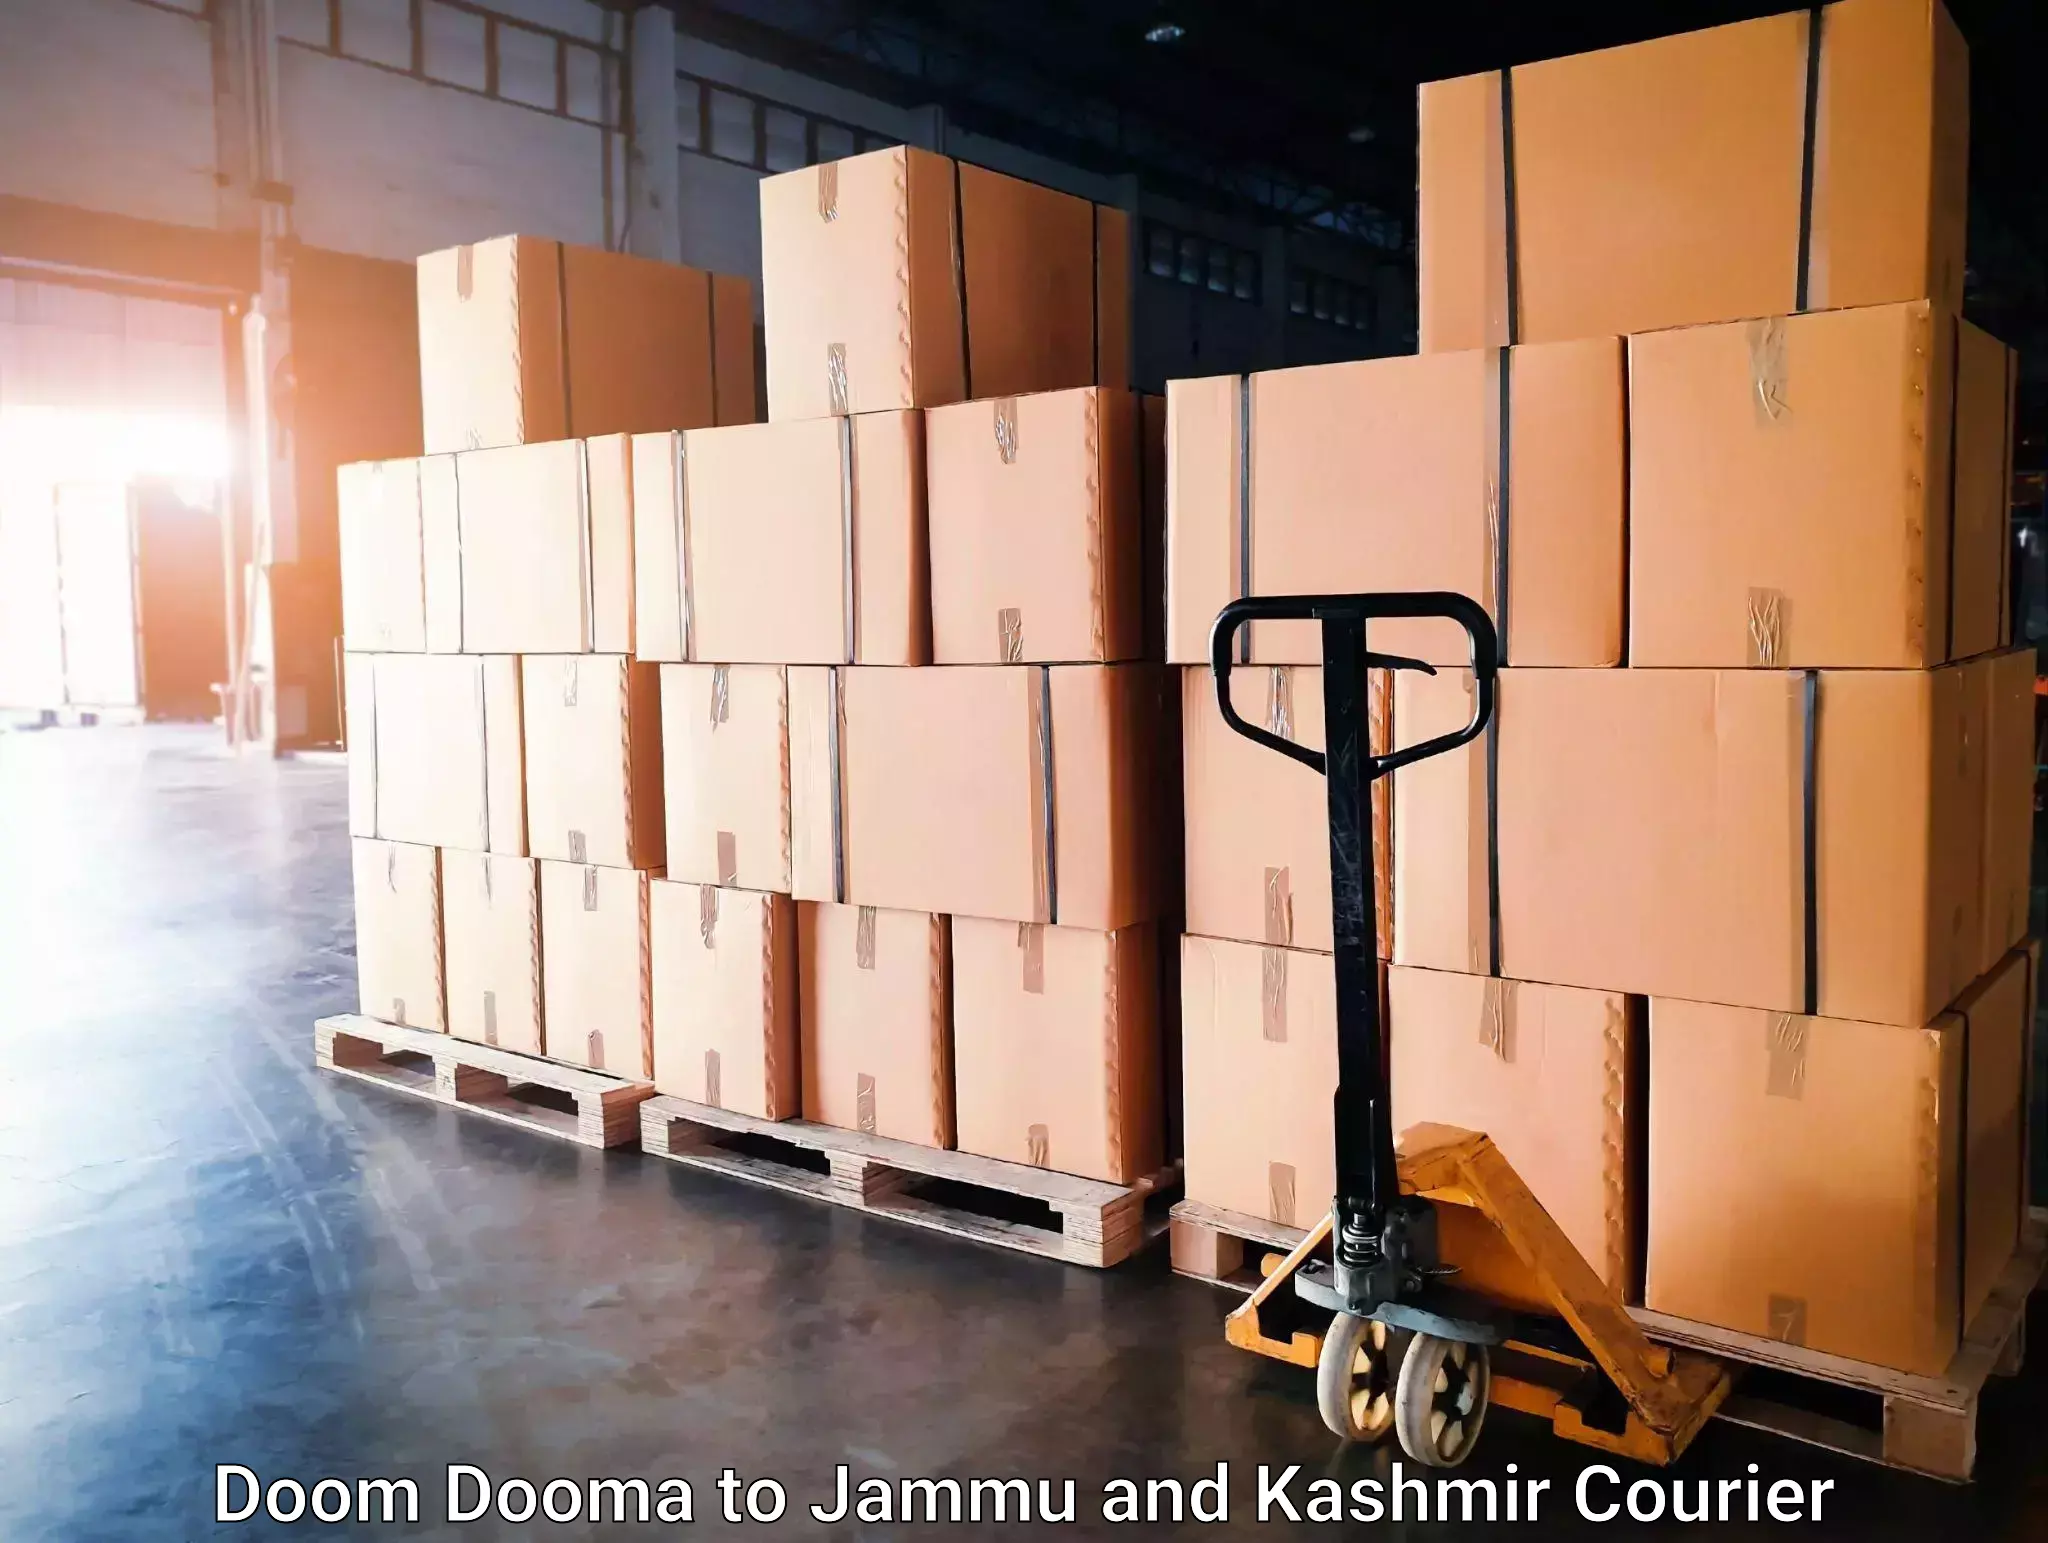 24-hour courier service Doom Dooma to Hiranagar